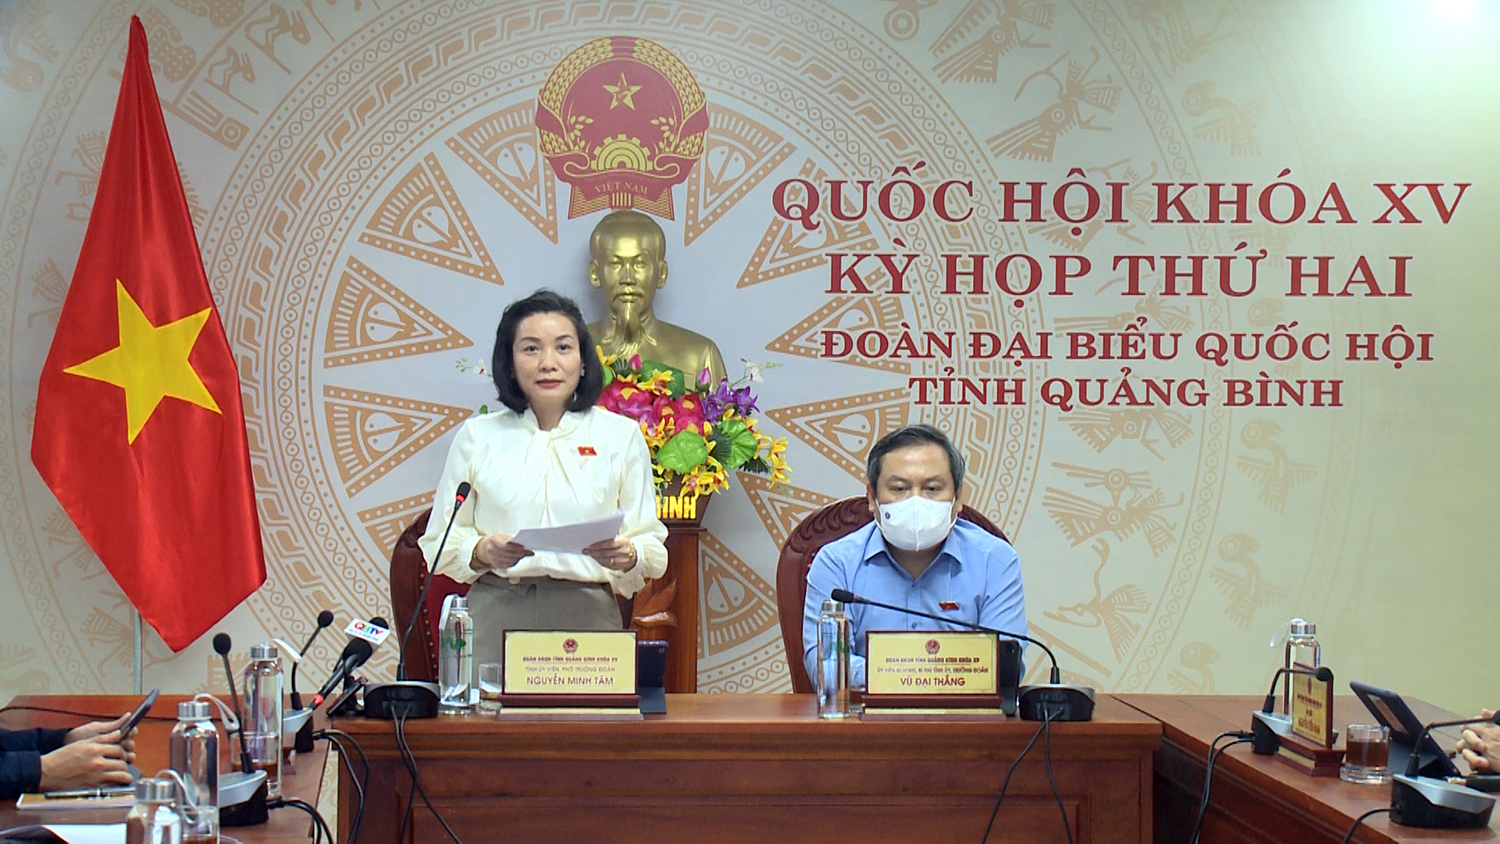 Đại biểu Nguyễn Minh Tâm thảo luận tại phiên họp